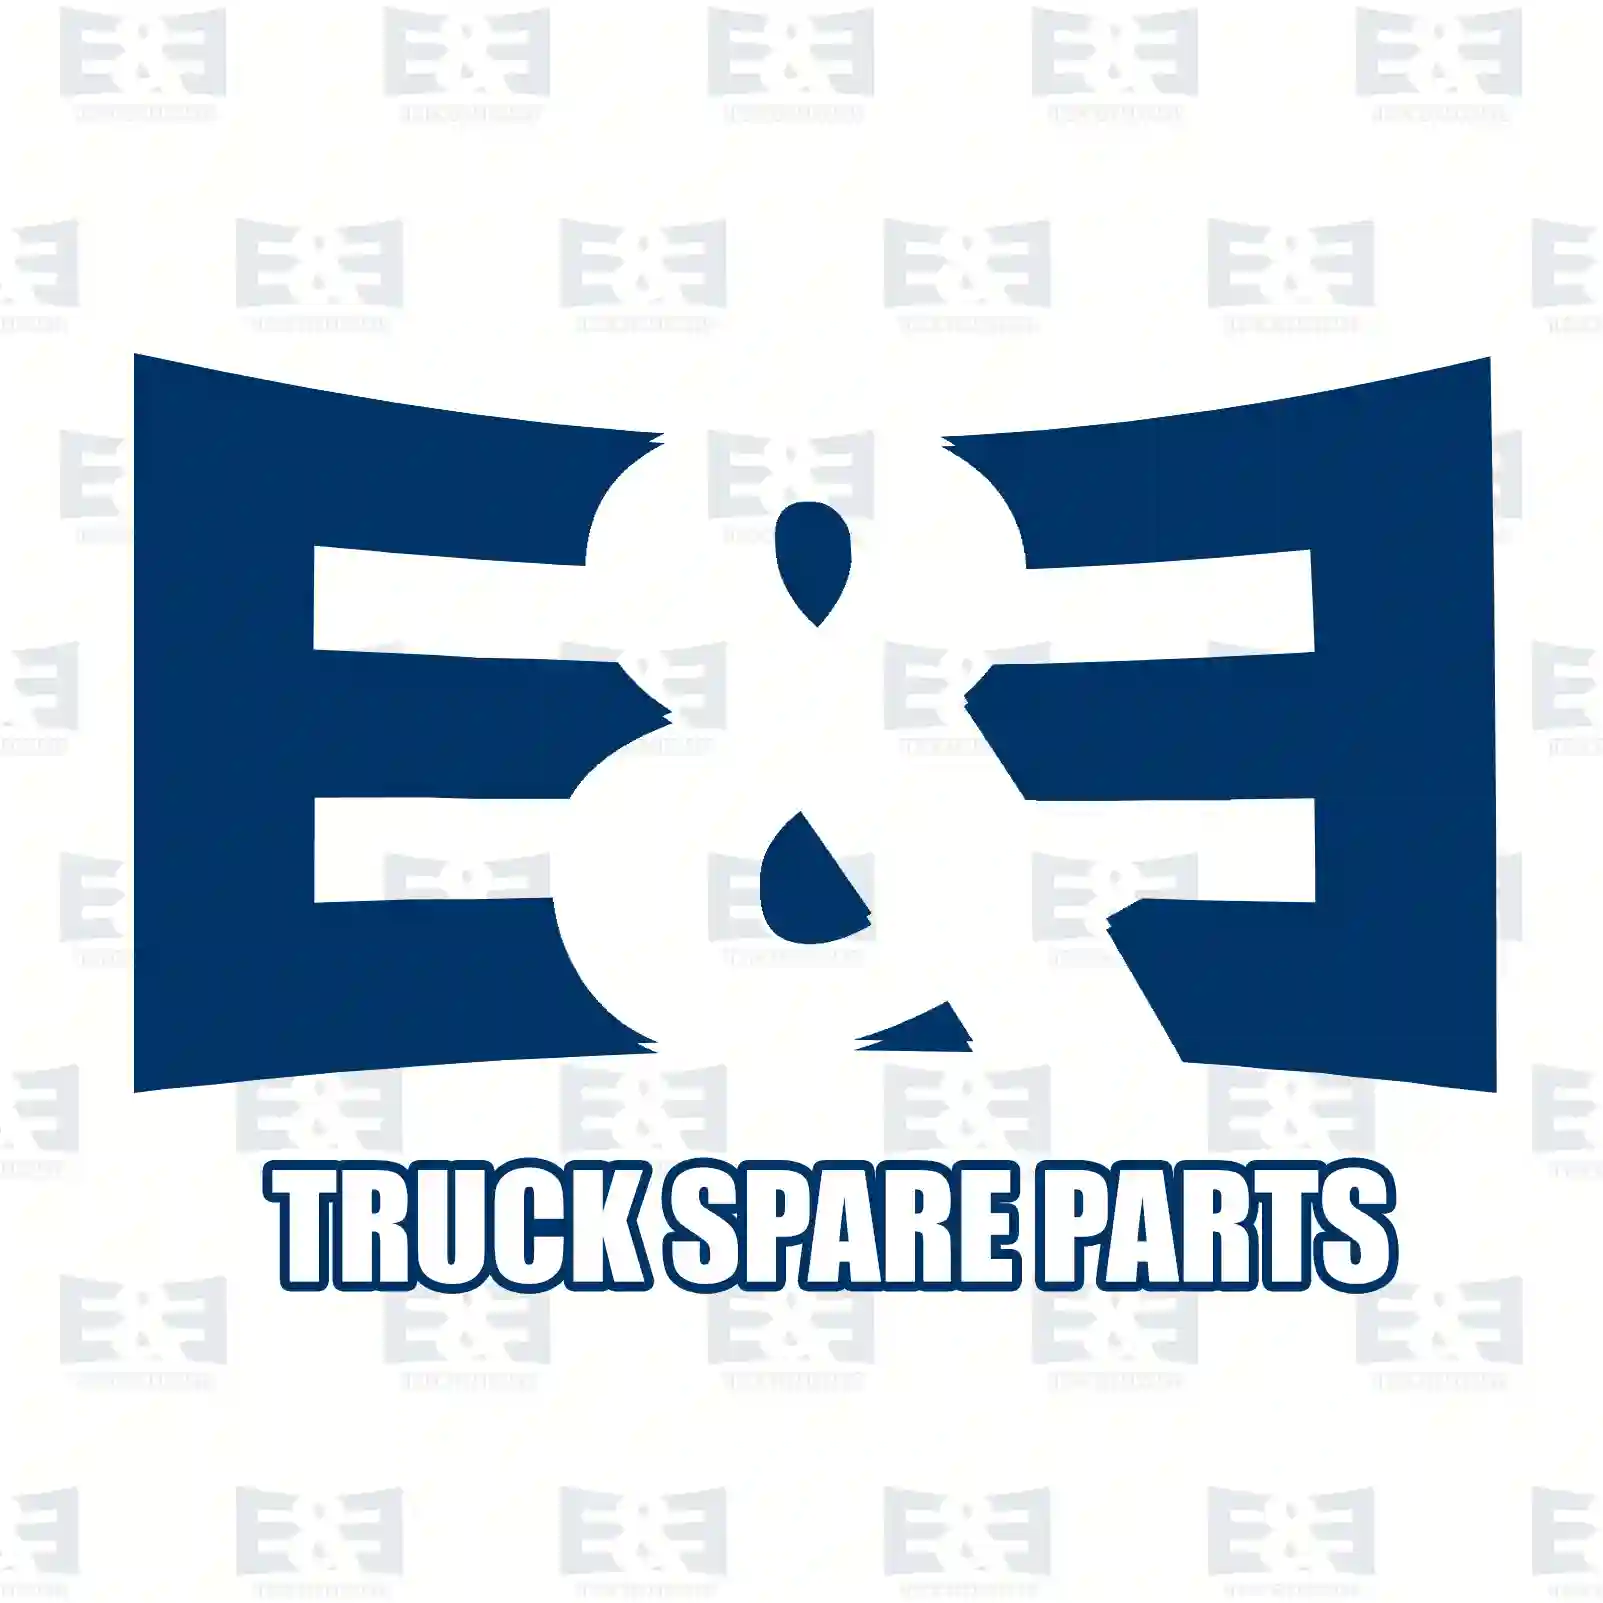 Shock absorber, 2E2281146, 81437016901, 81437026017, , , ||  2E2281146 E&E Truck Spare Parts | Truck Spare Parts, Auotomotive Spare Parts Shock absorber, 2E2281146, 81437016901, 81437026017, , , ||  2E2281146 E&E Truck Spare Parts | Truck Spare Parts, Auotomotive Spare Parts